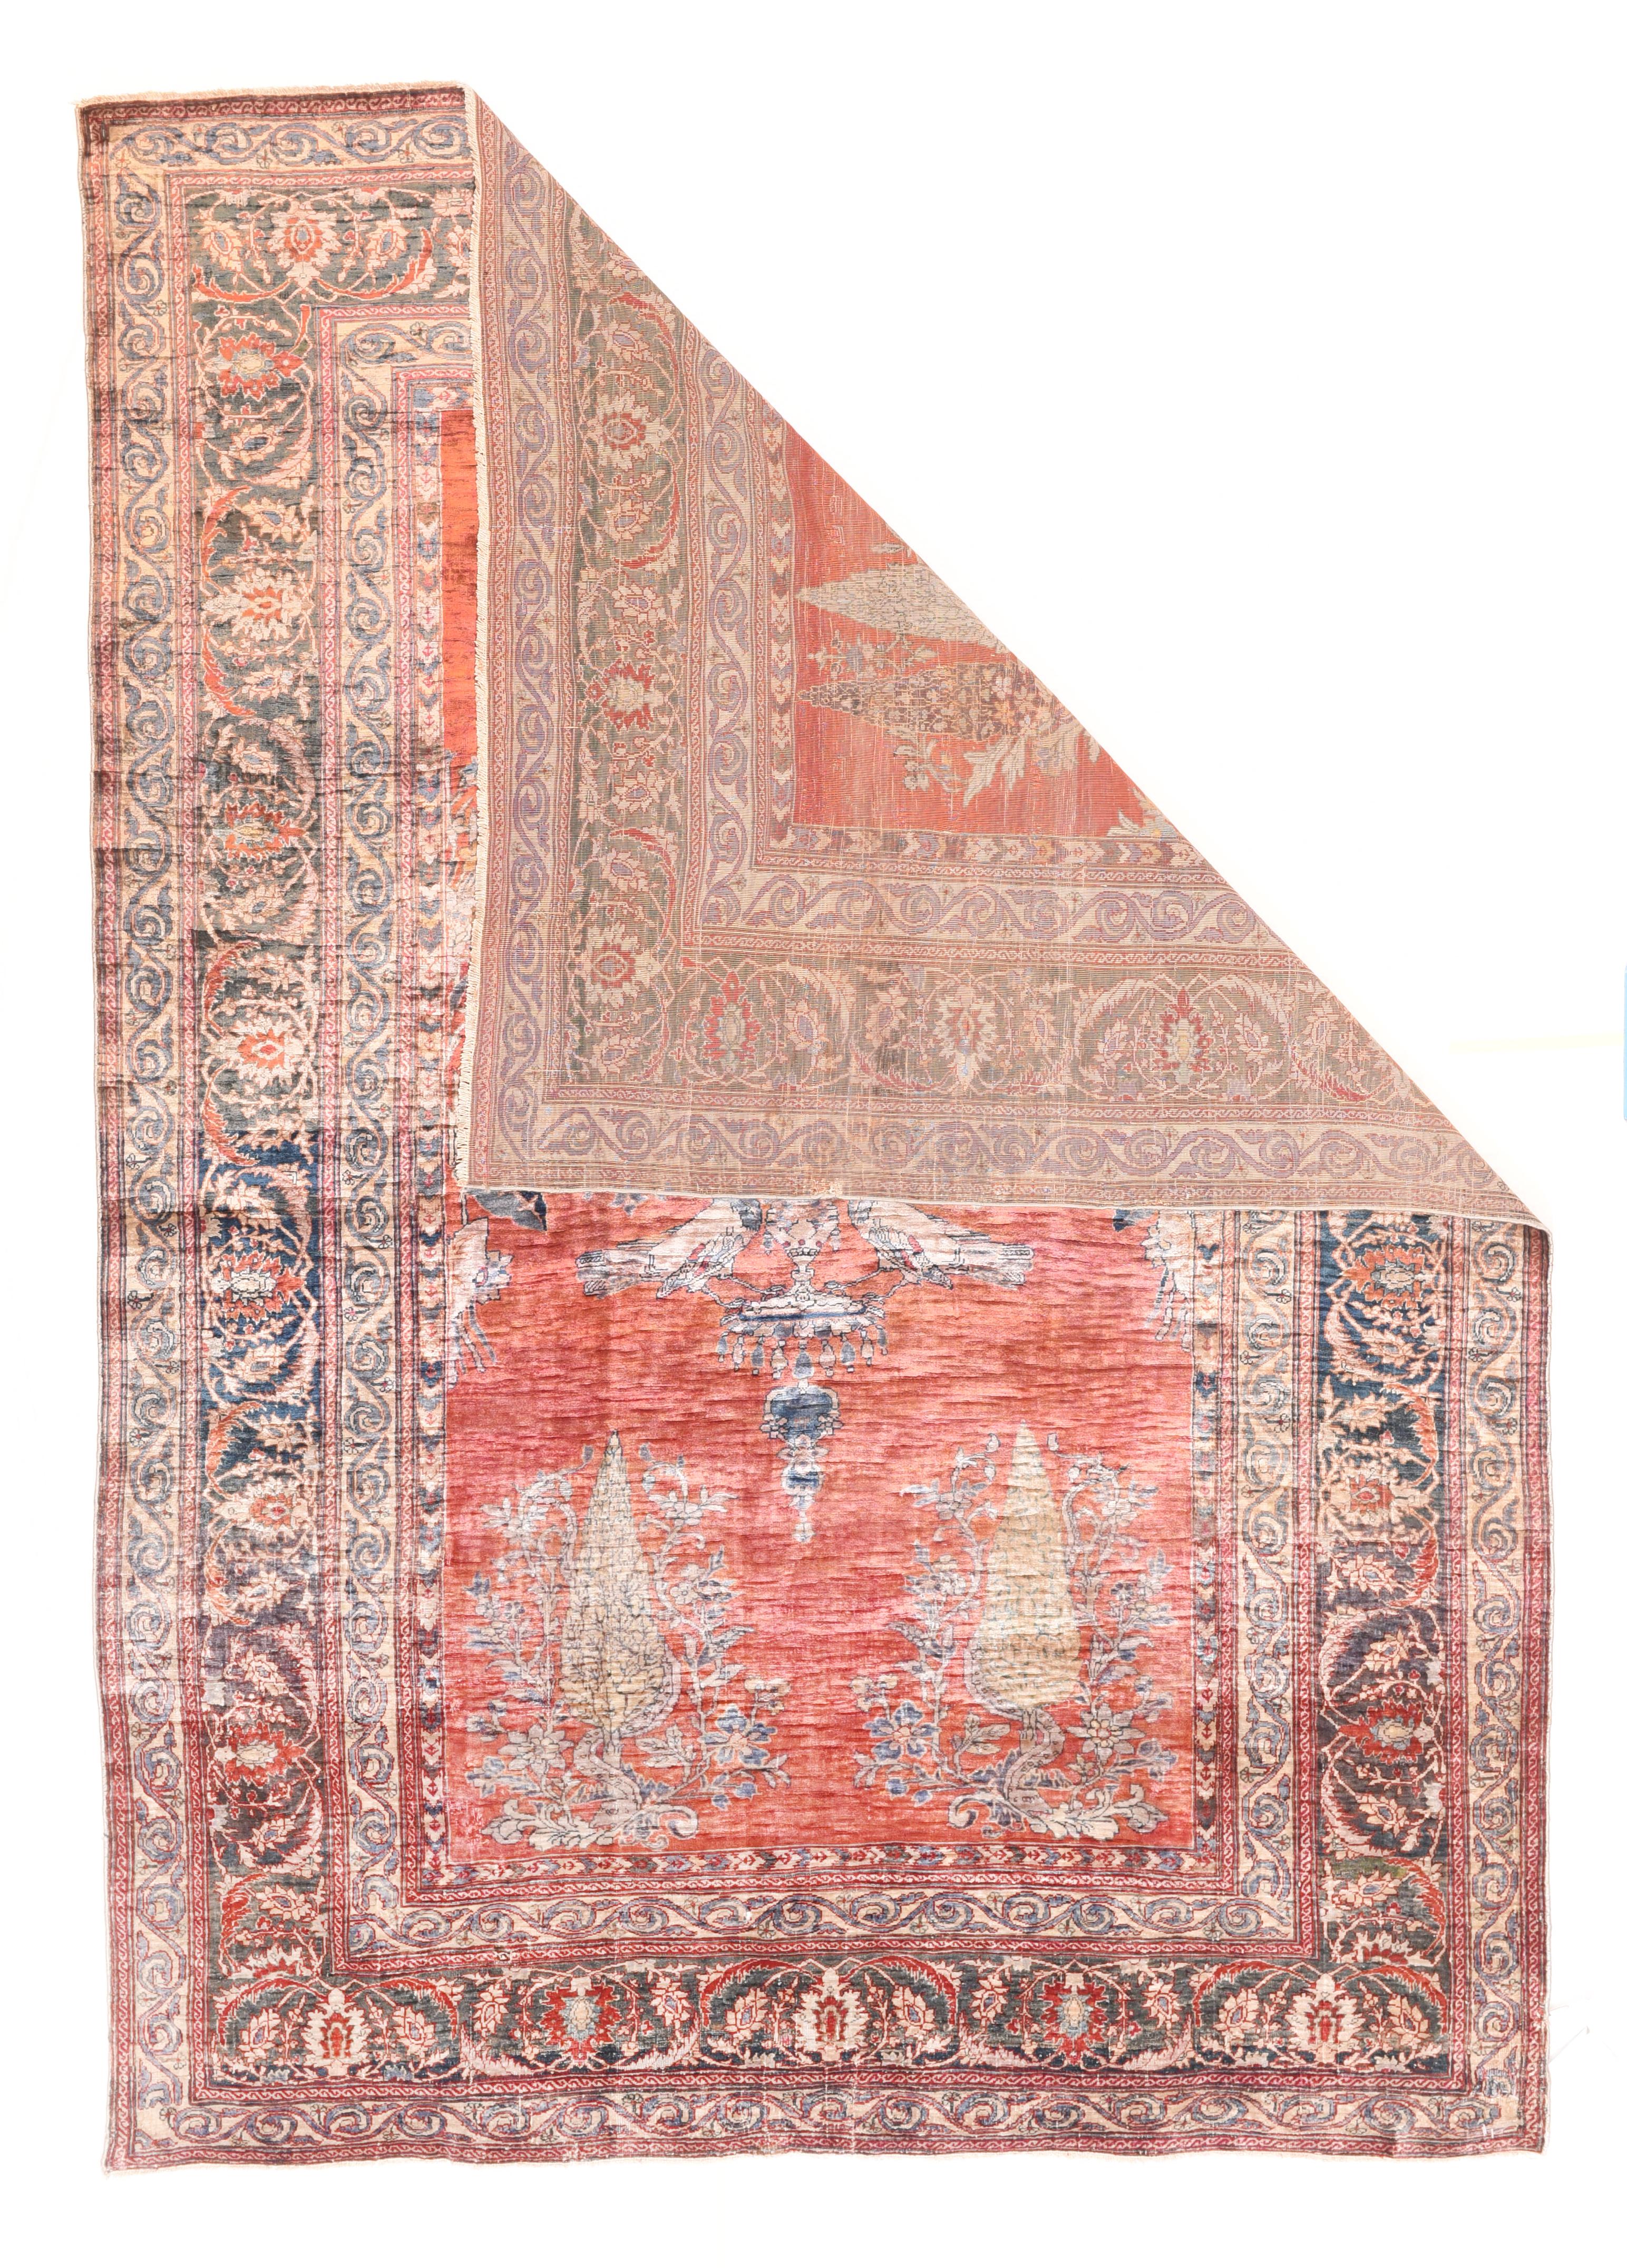 Antique Persian silk Heriz rug measures: 4'6'' x 6'4''.